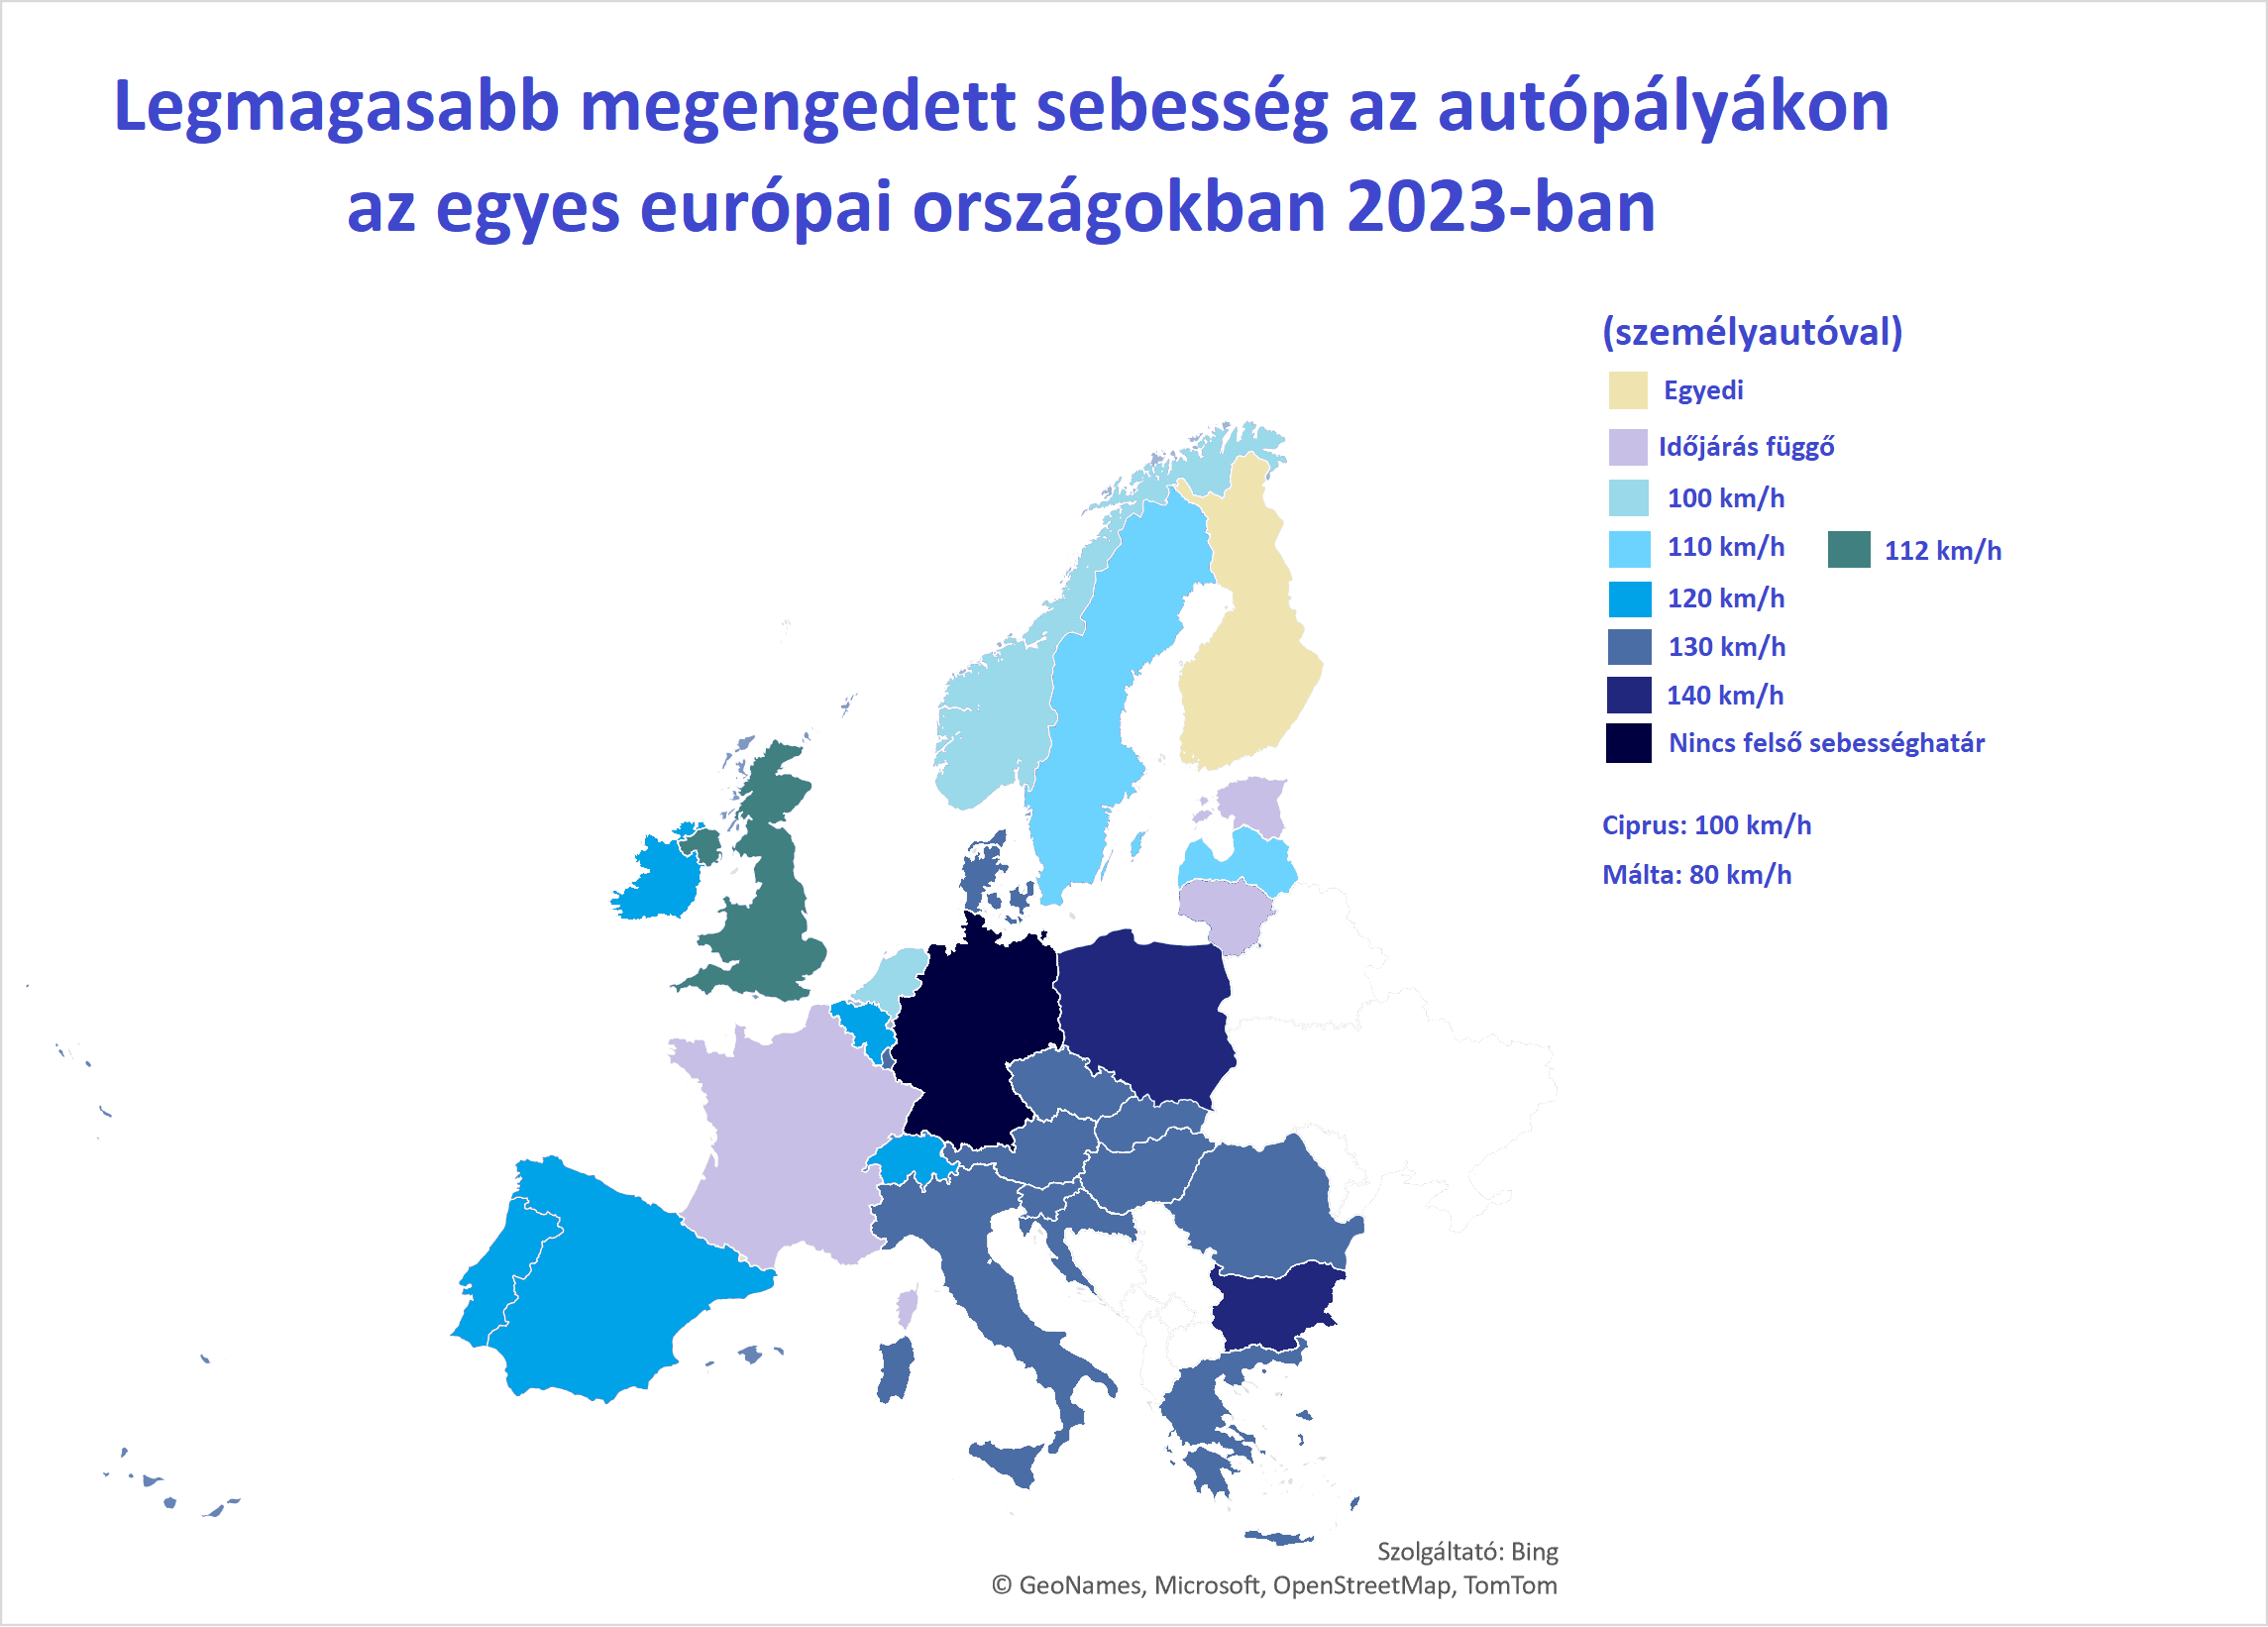 Legmagasabb megengedett sebesség az autópályákon az egyes európai országokban 2023-ban